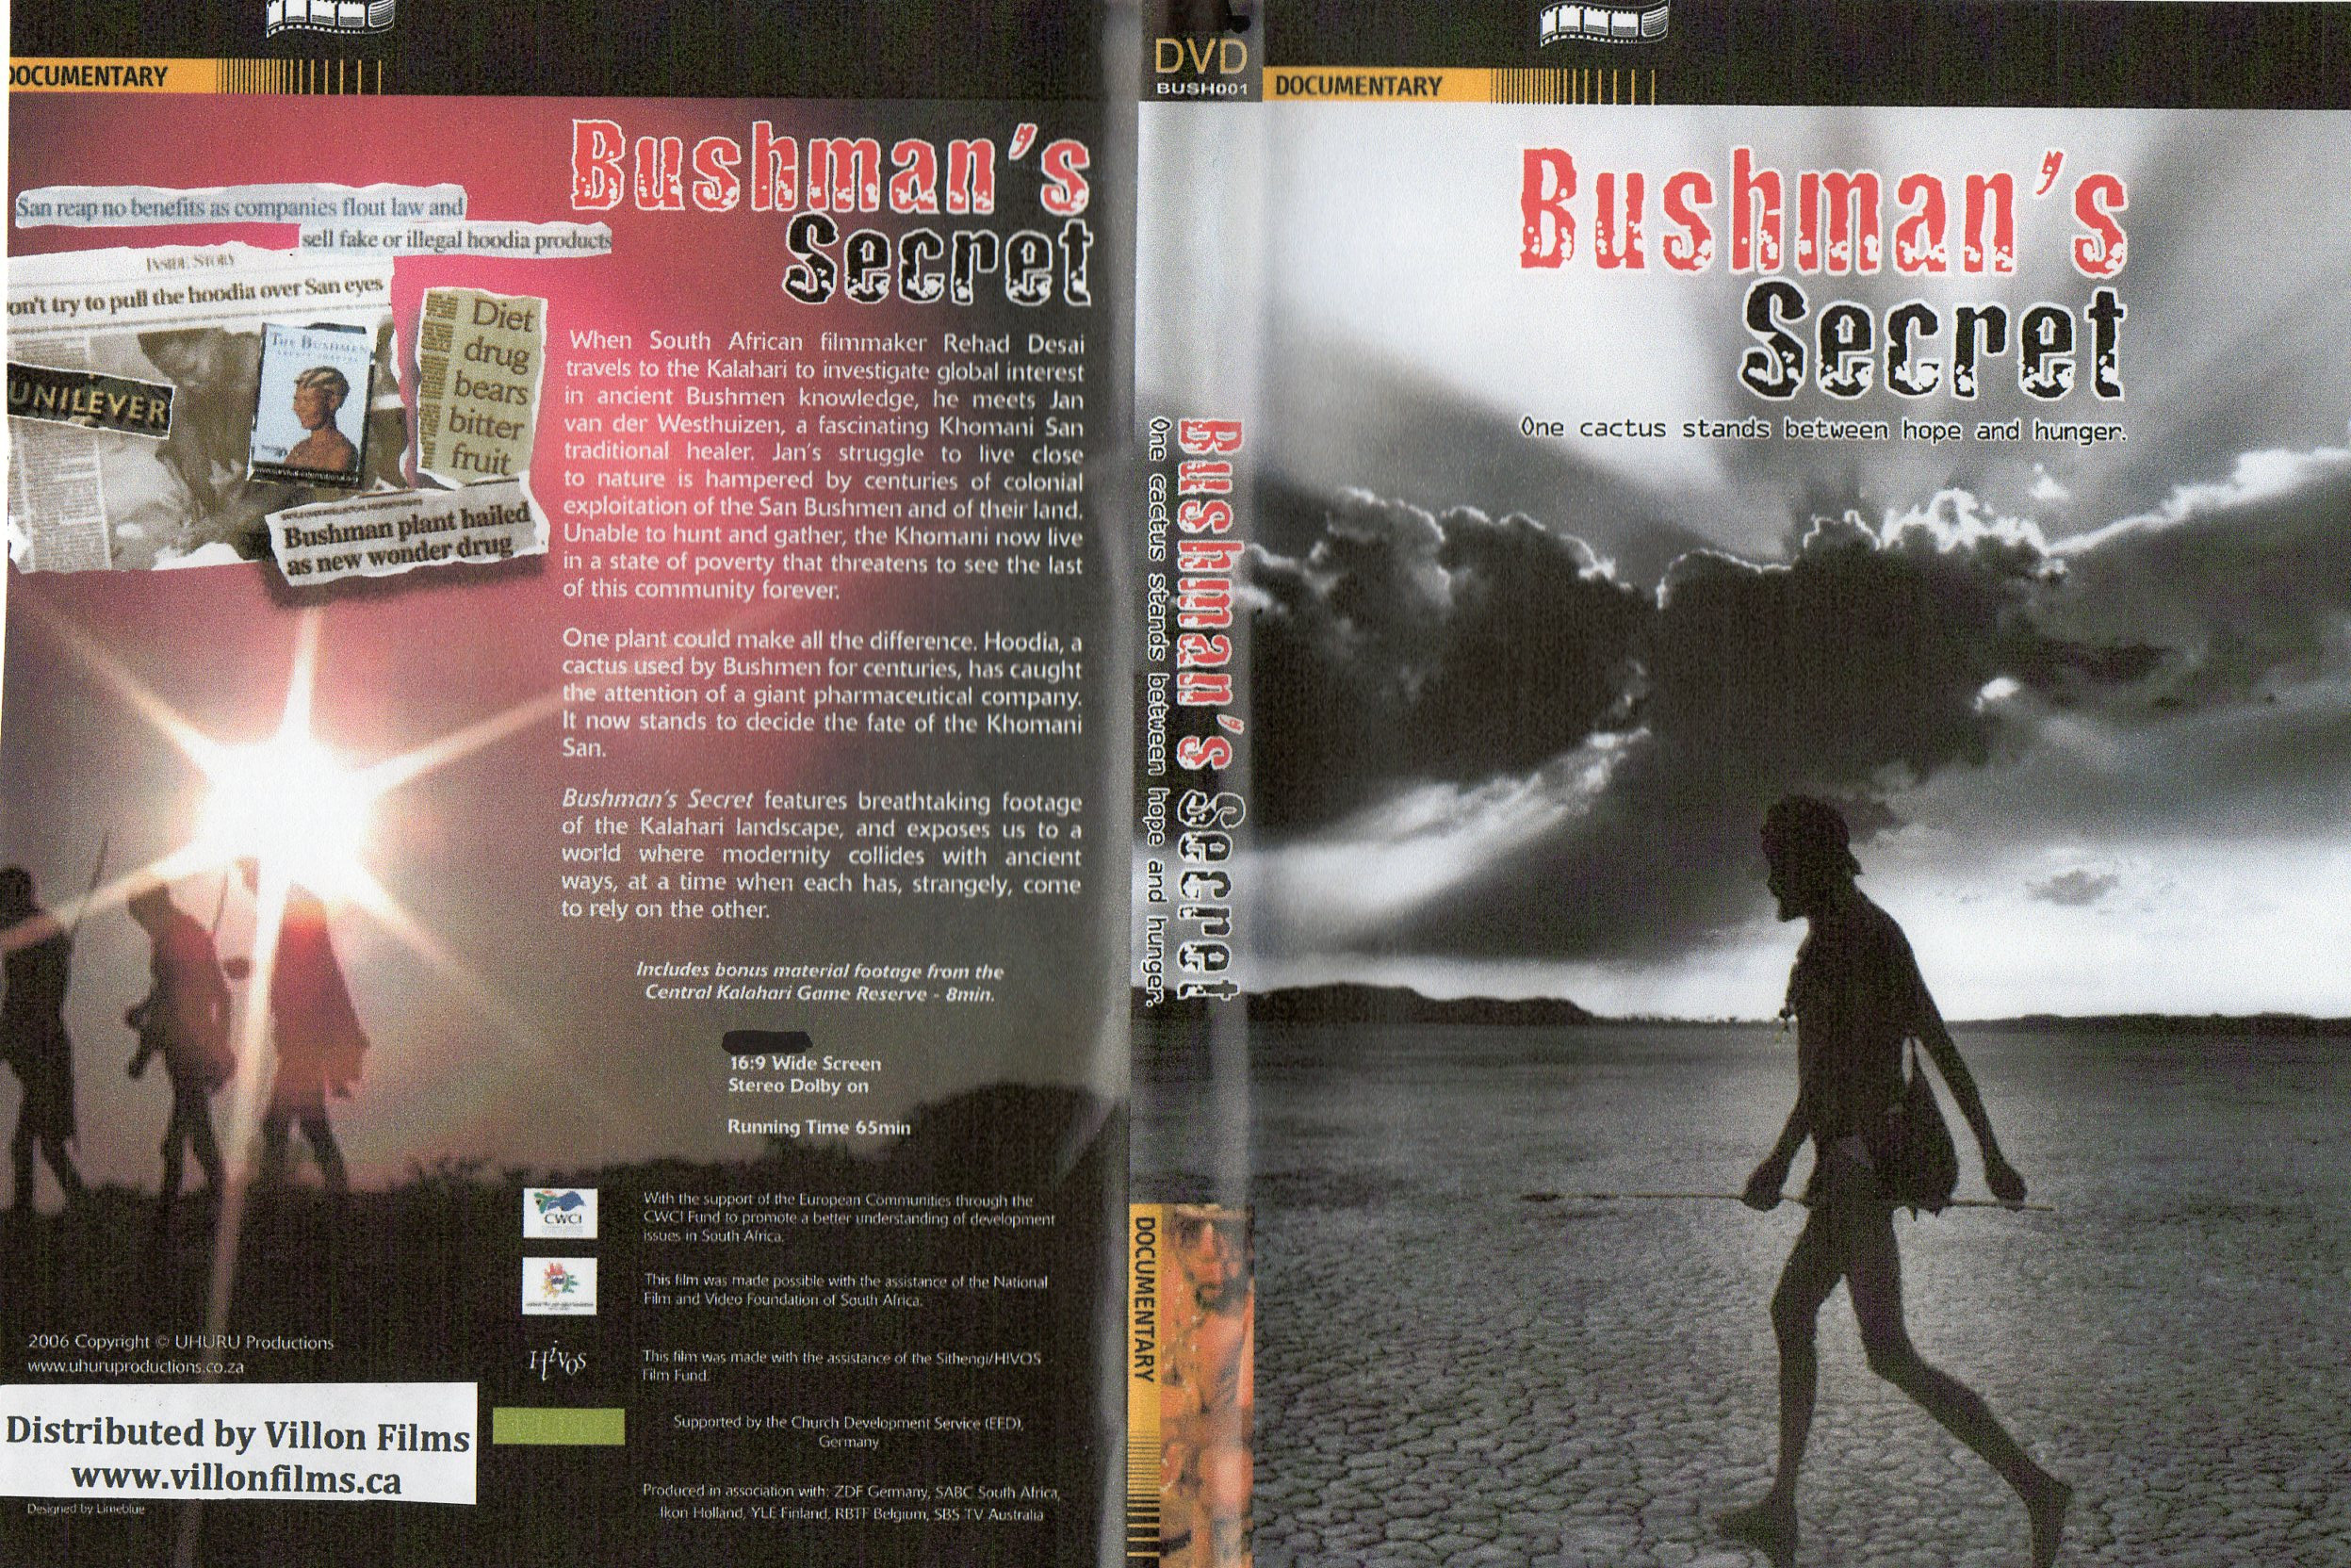 Bushman’s Secrets - DVD Sleeve.